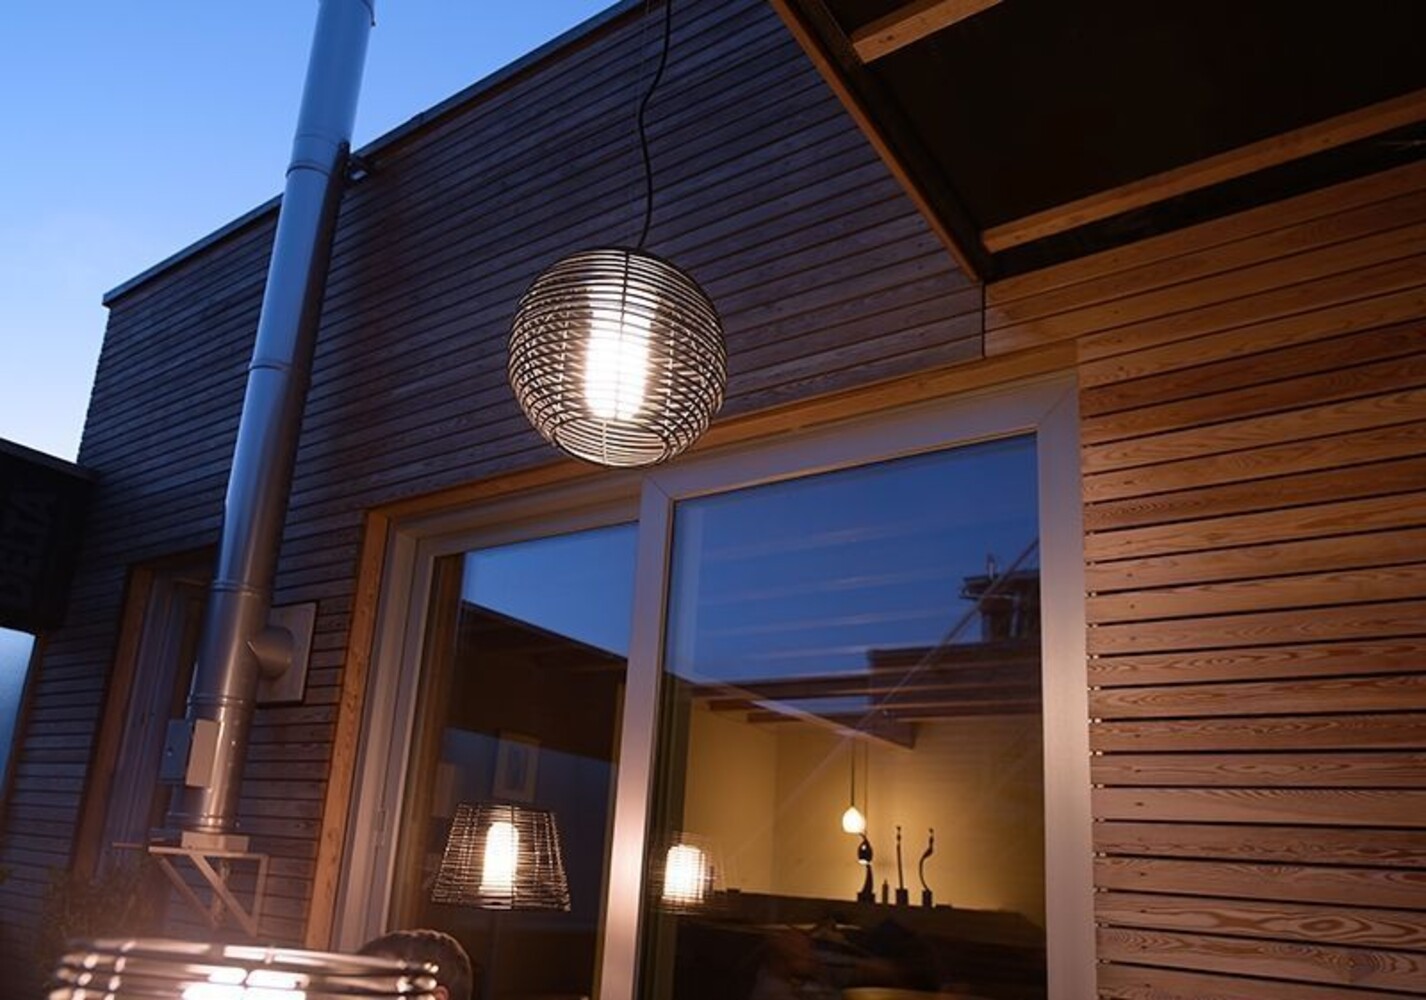 Elegante Pendelleuchte der Marke Deko-Light in stilvoll glänzendem Finish, perfekt zur Beleuchtung und Verschönerung des Wohnbereichs